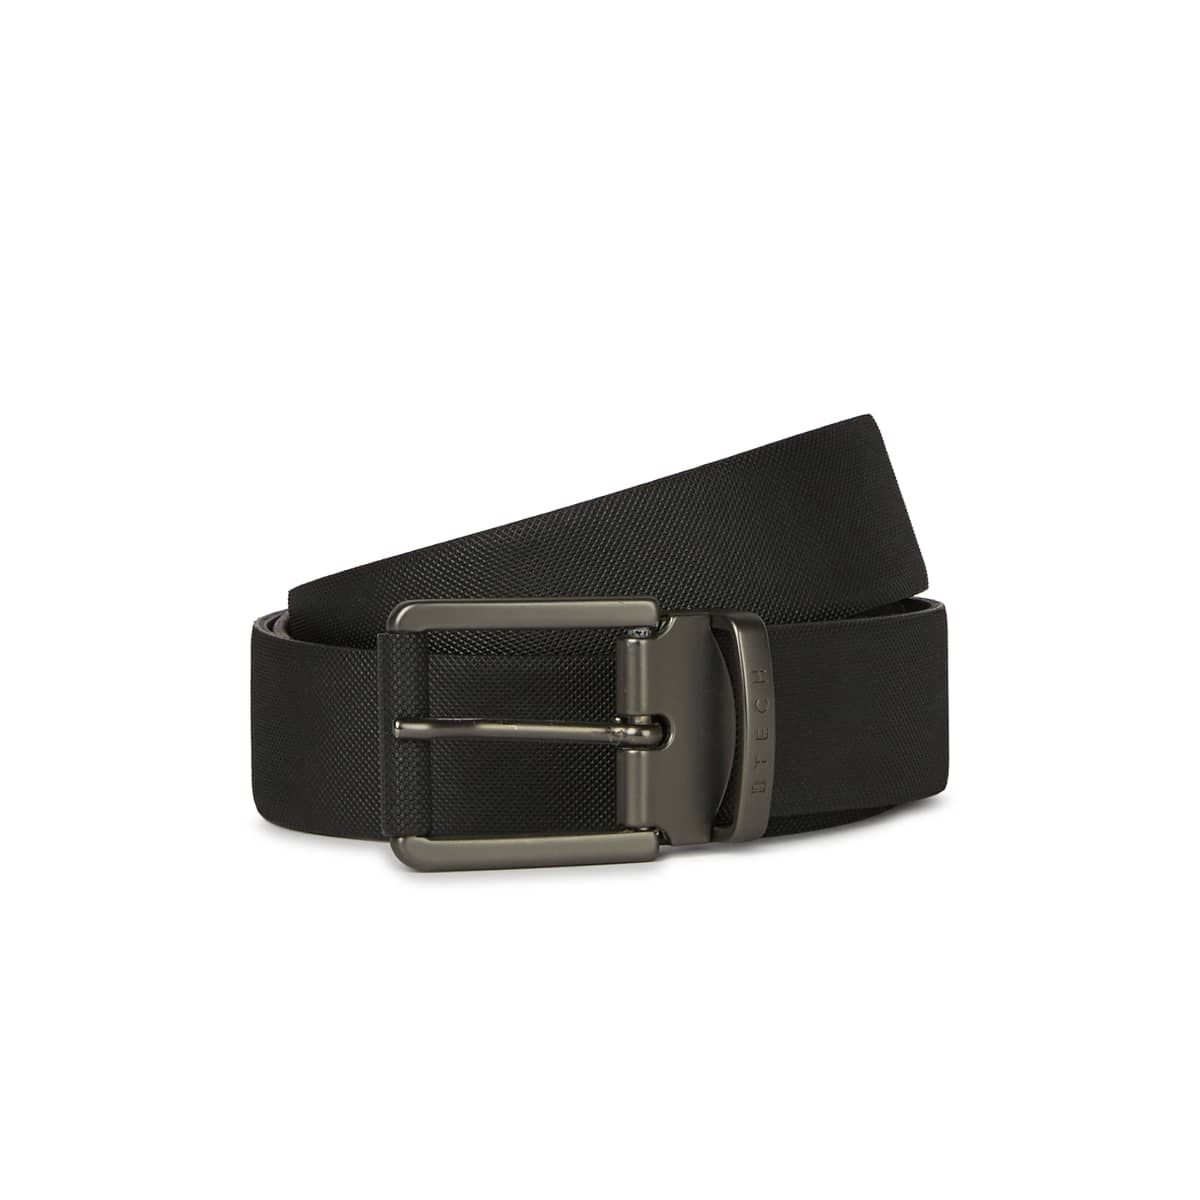 Ceinture Pour Buckle Boucle de ceinture amovible ceinture cuir ceinture noir 